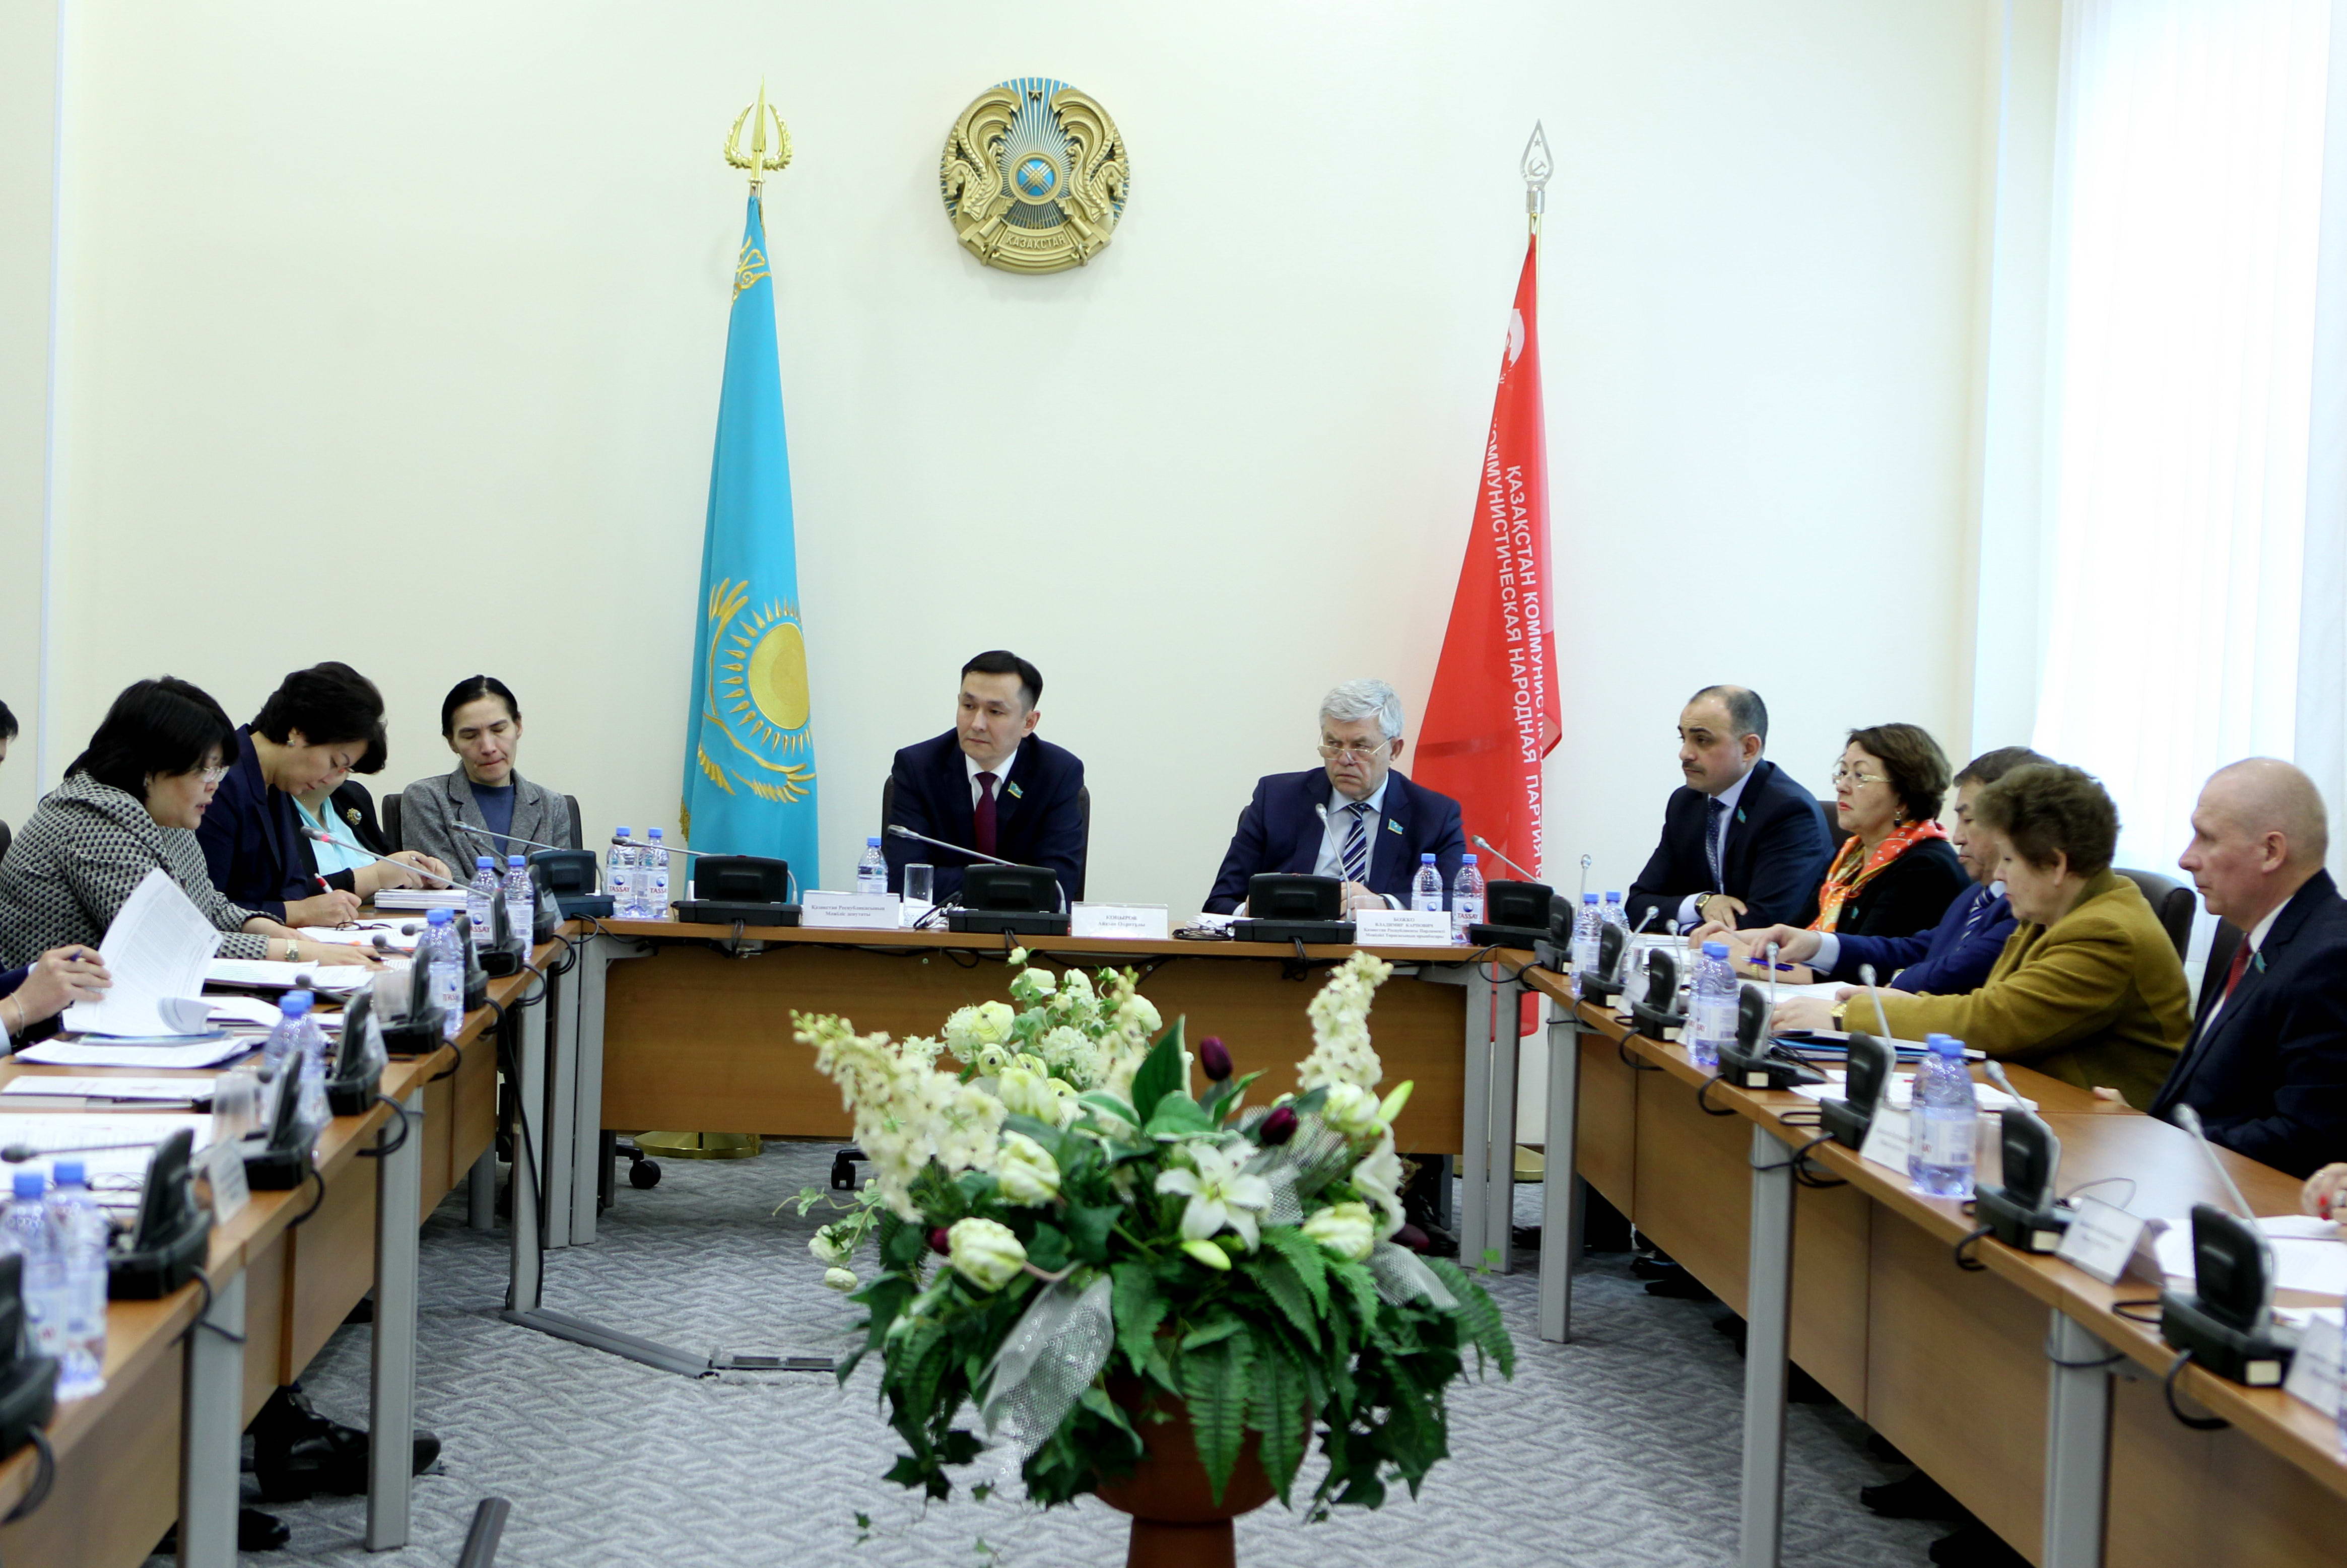 Расширенное заседание фракции "Народные коммунисты" по проблемам матерей одиночек и выплатам алиментов в Казахстане